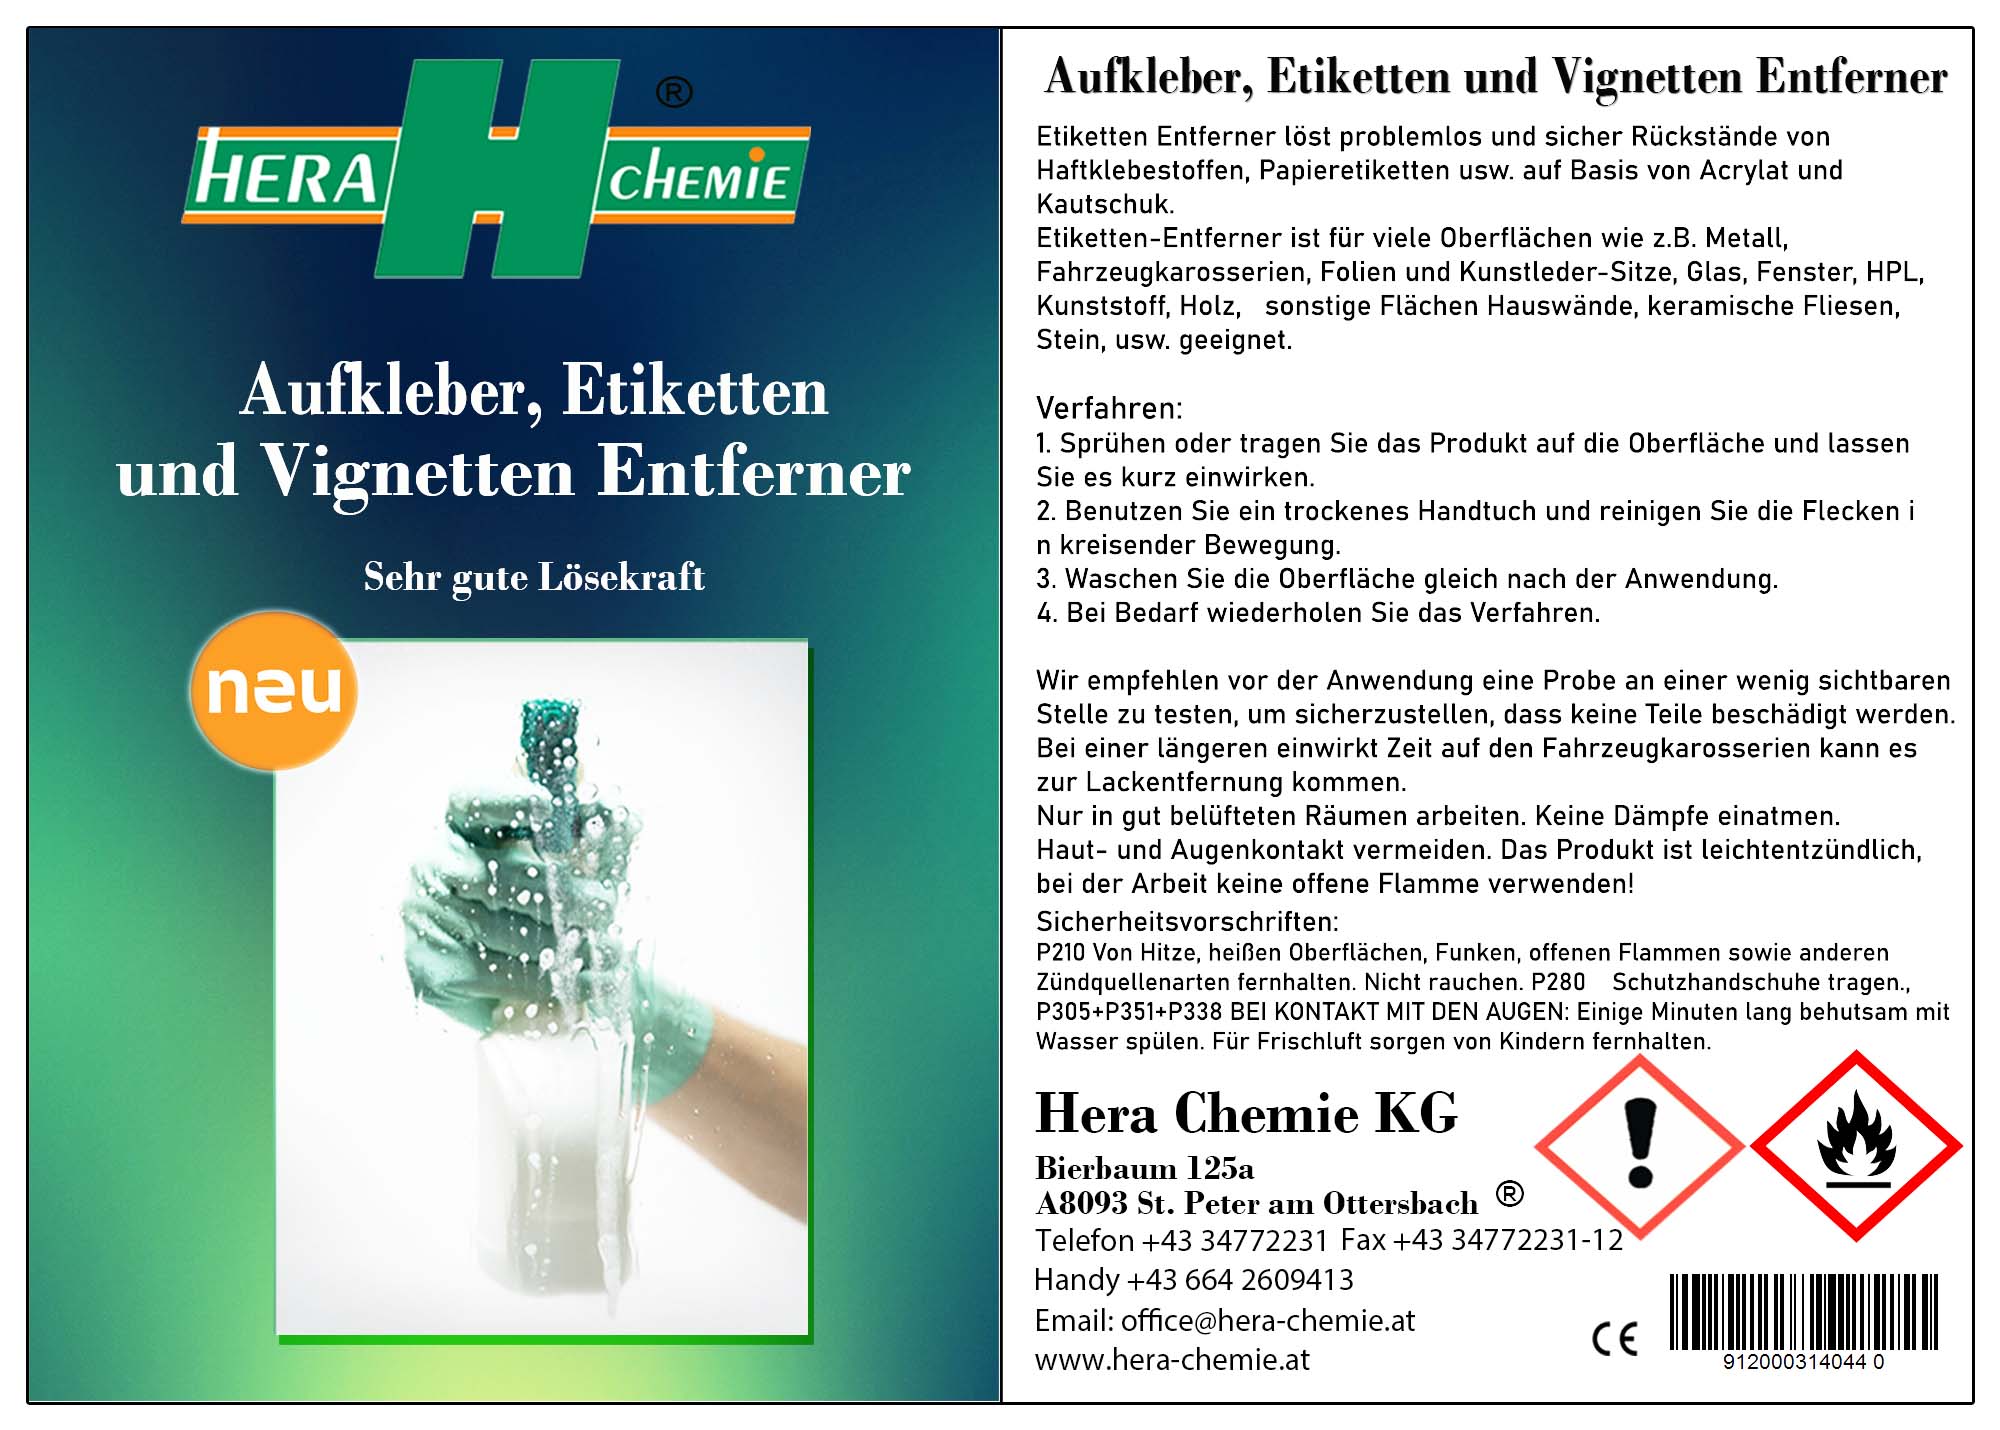 https://www.hera-chemie.at/wp-content/uploads/2019/11/Aufkleber-Etiketten-und-Vignetten-Entferner.jpg